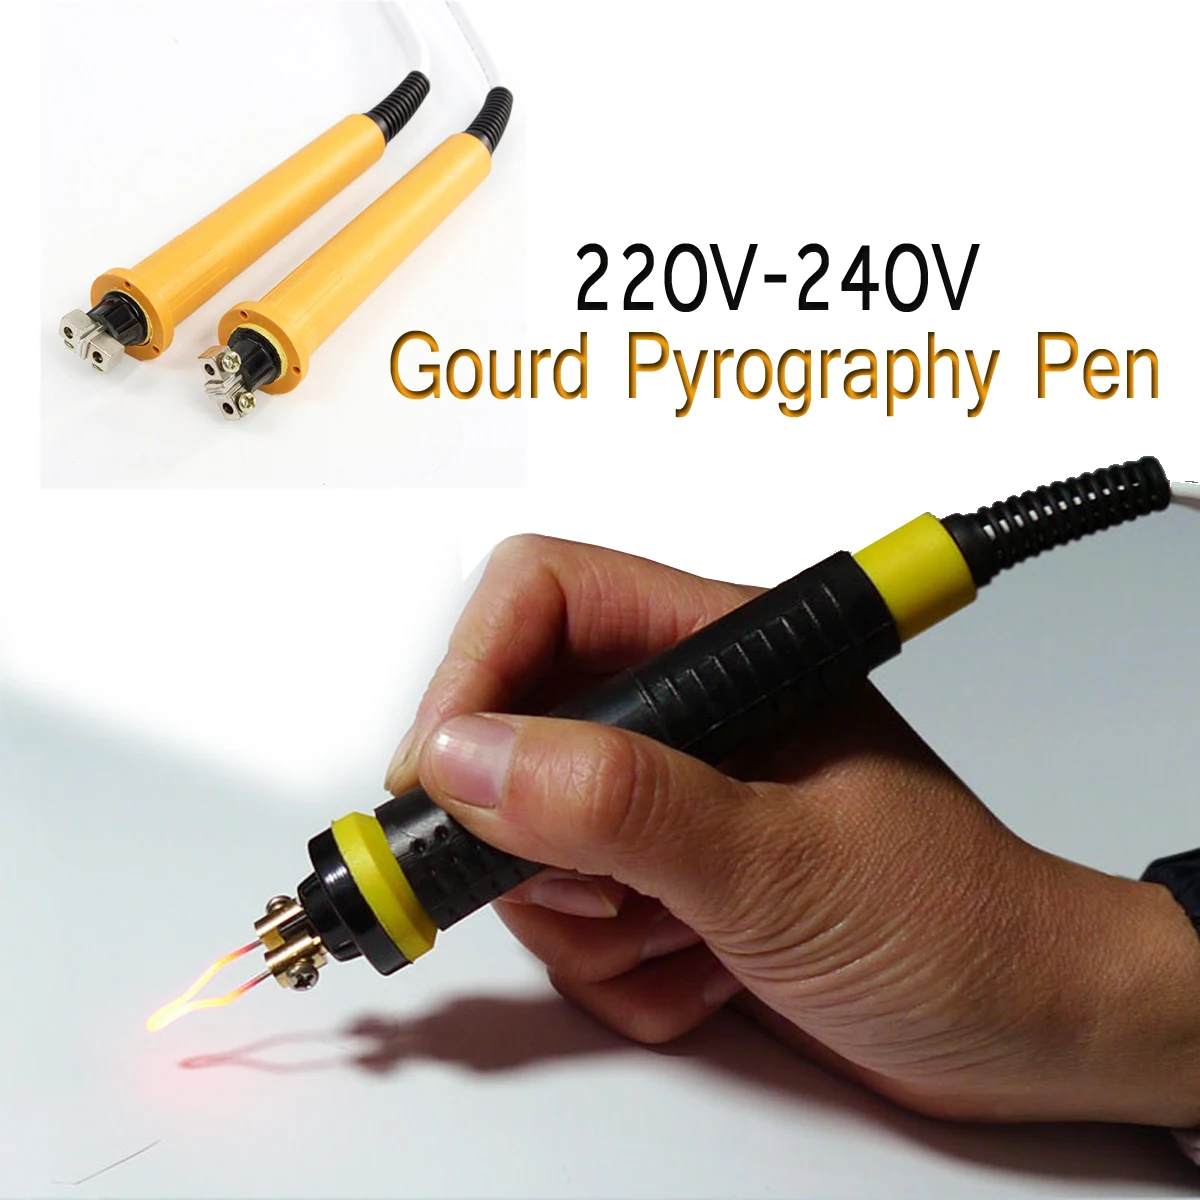 Professionaalne jootekolb Pen Electrocautery Pen Nikerdamist Jootmise Kõrvits Pyrography Pen Kõrvits Pyrography Masin